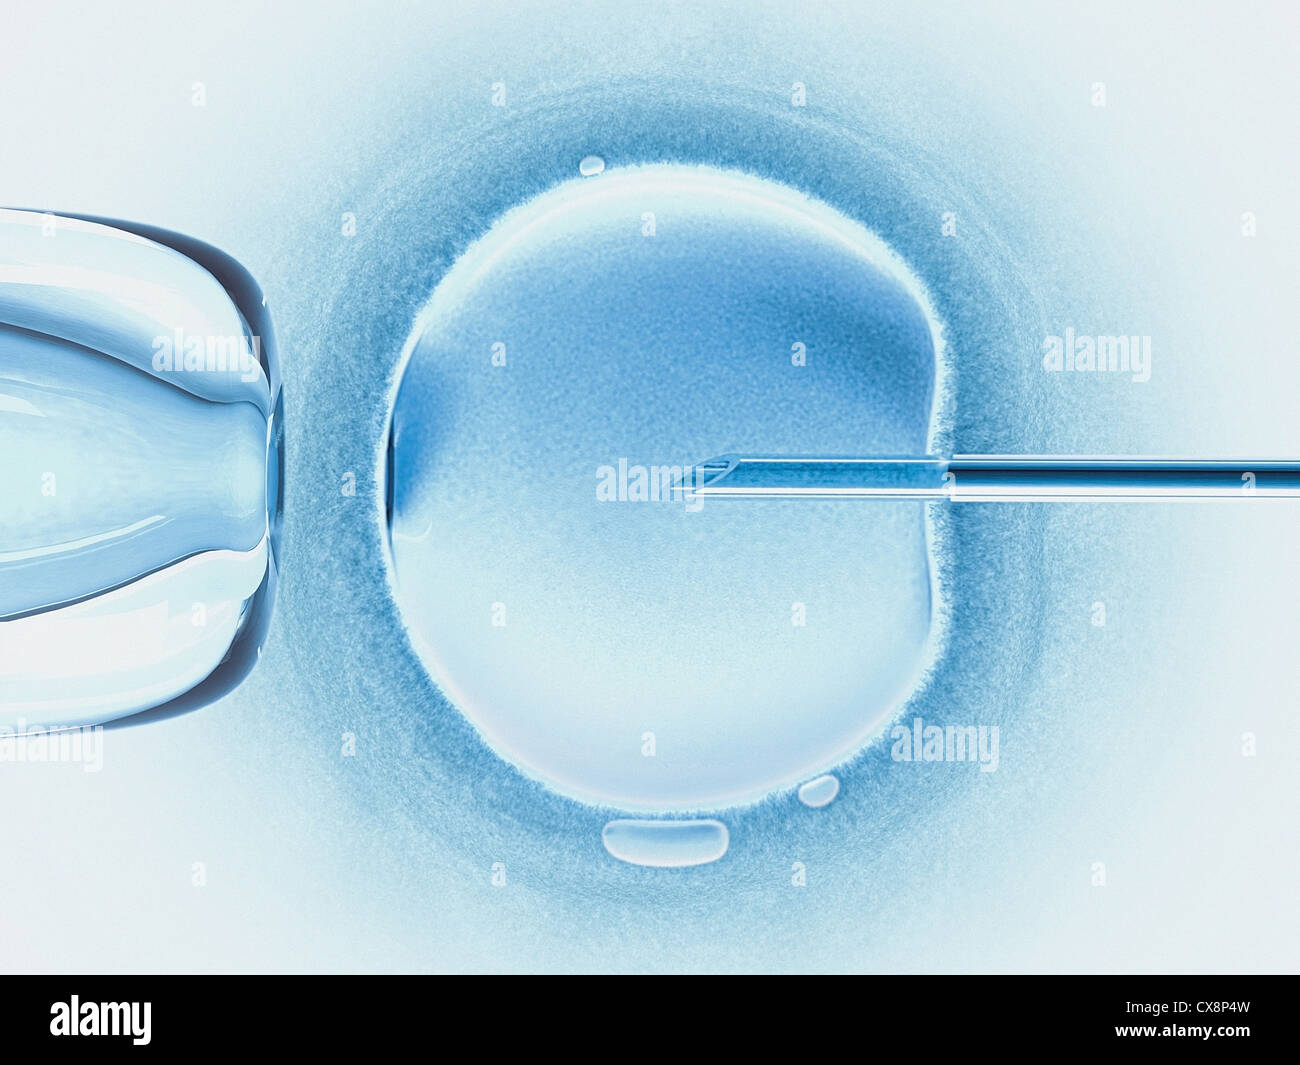 Concept of artificial insemination in vitro. Stock Photo